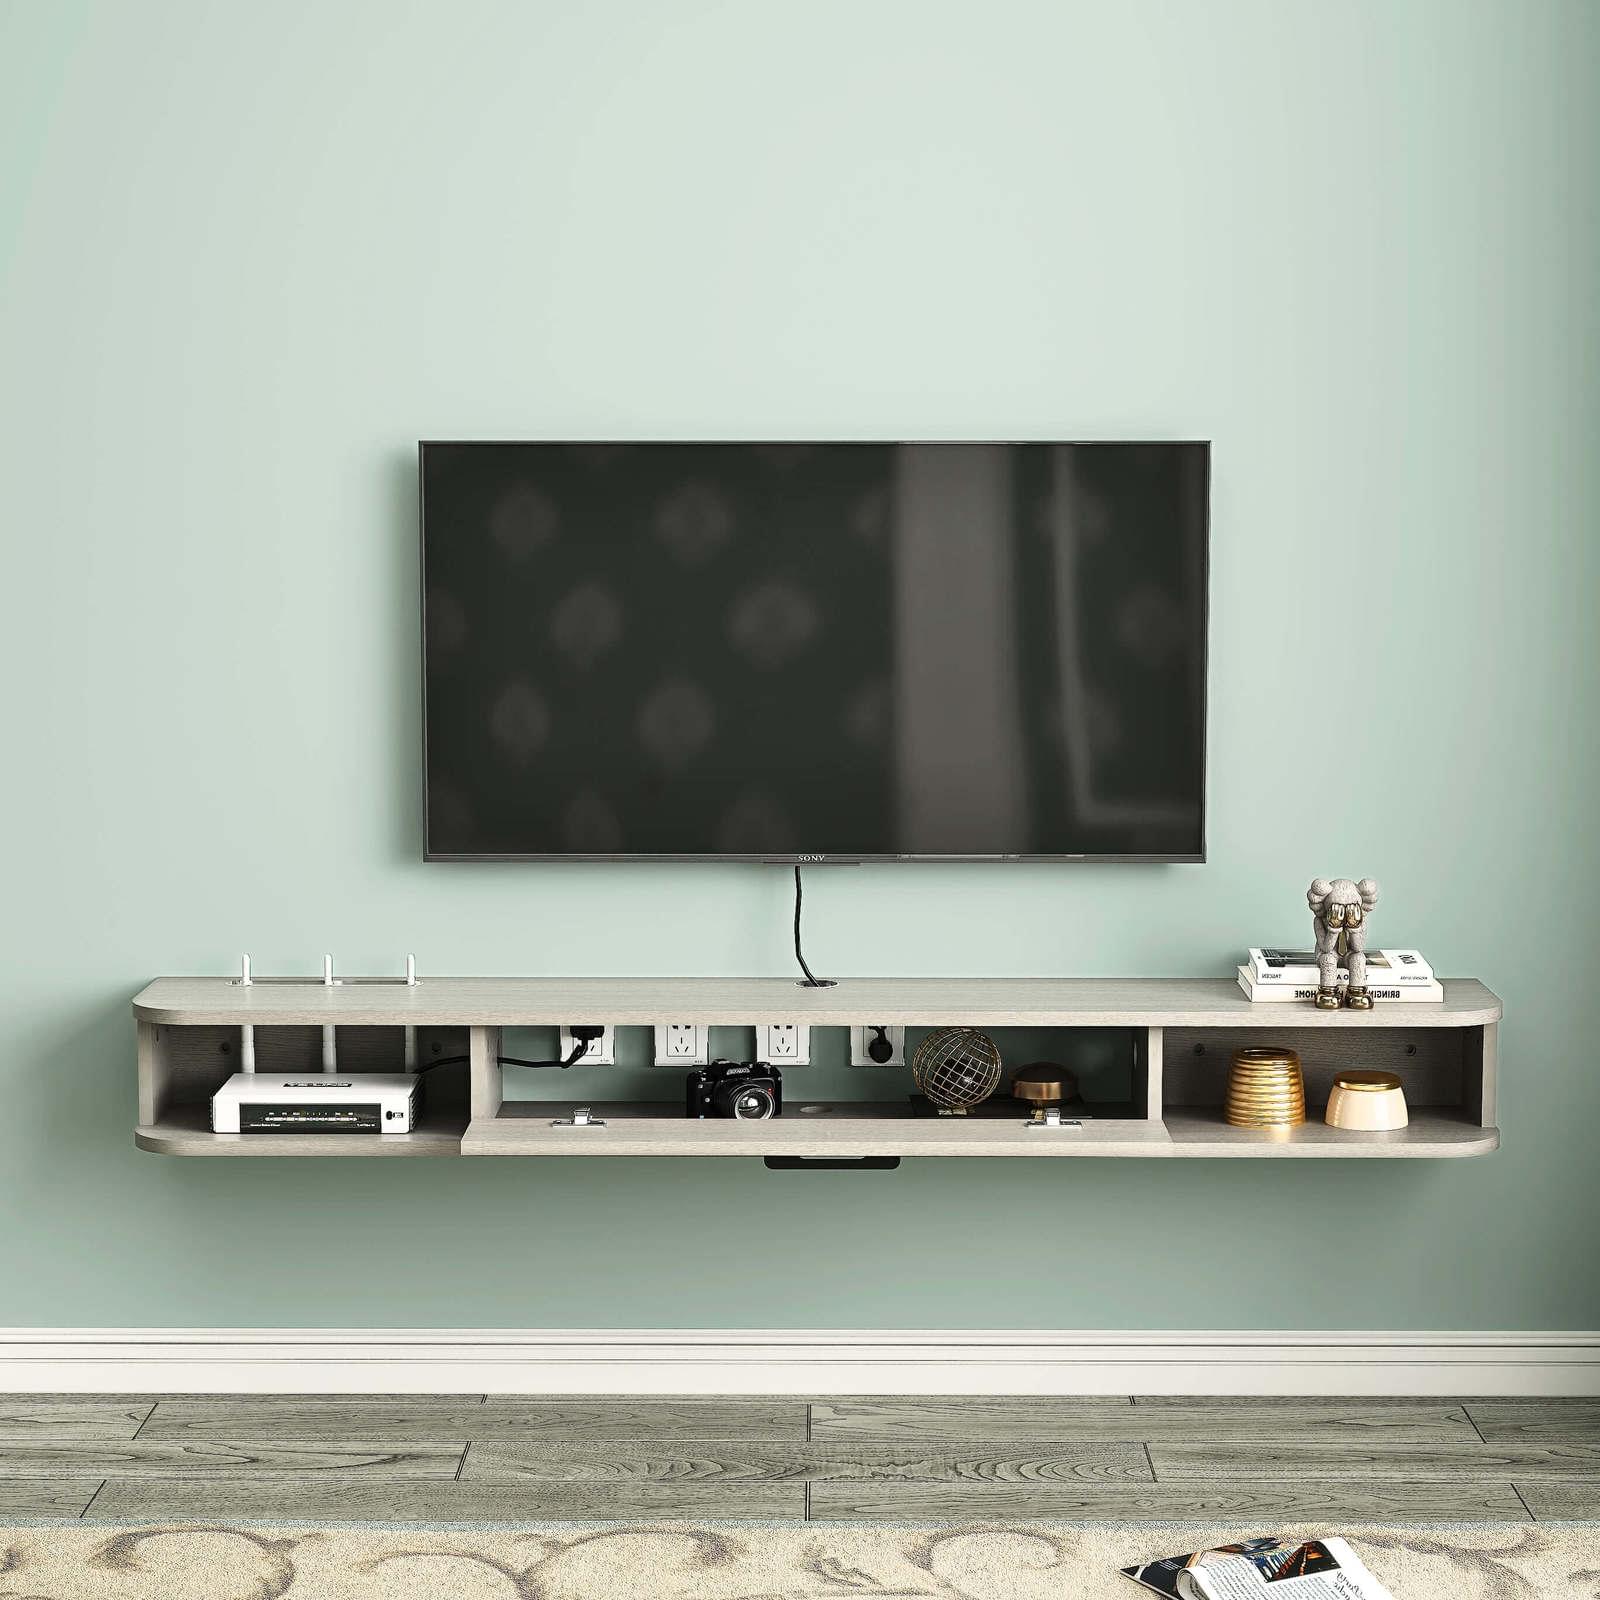 Light Grey Oak Plywood Slim Modern Floating TV Stand & Shelf for 32"-50" TVs